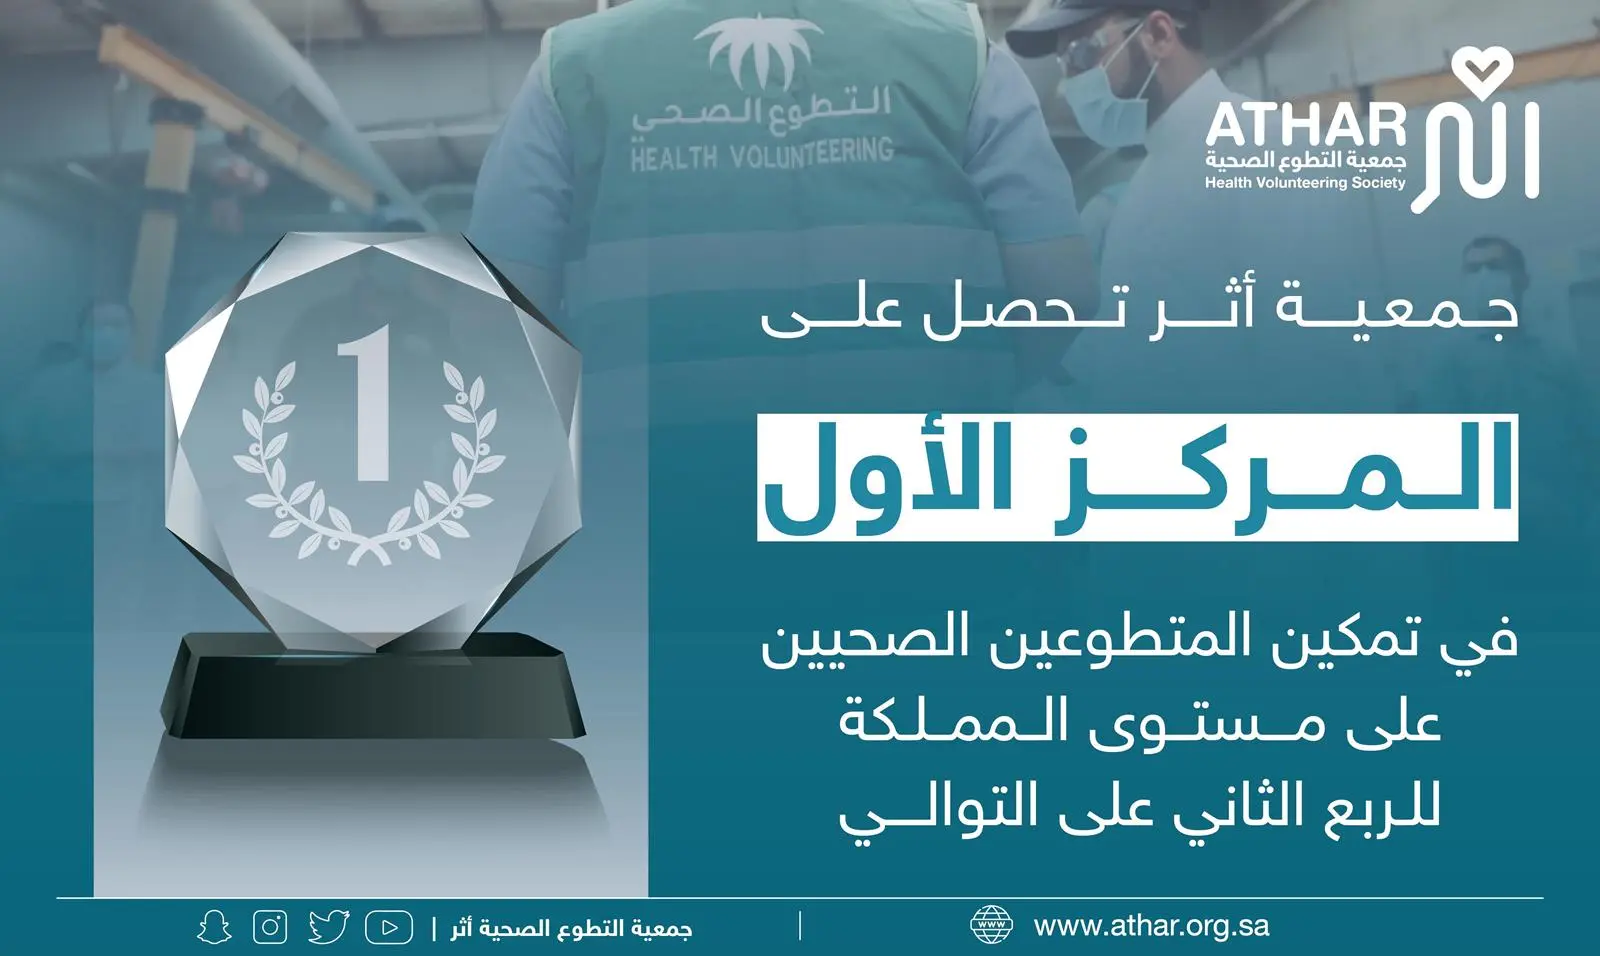 جمعية “أثر” للتطوّع الصحي تحقق المركز الأول على مستوى المملكة في تمكين المتطوعين